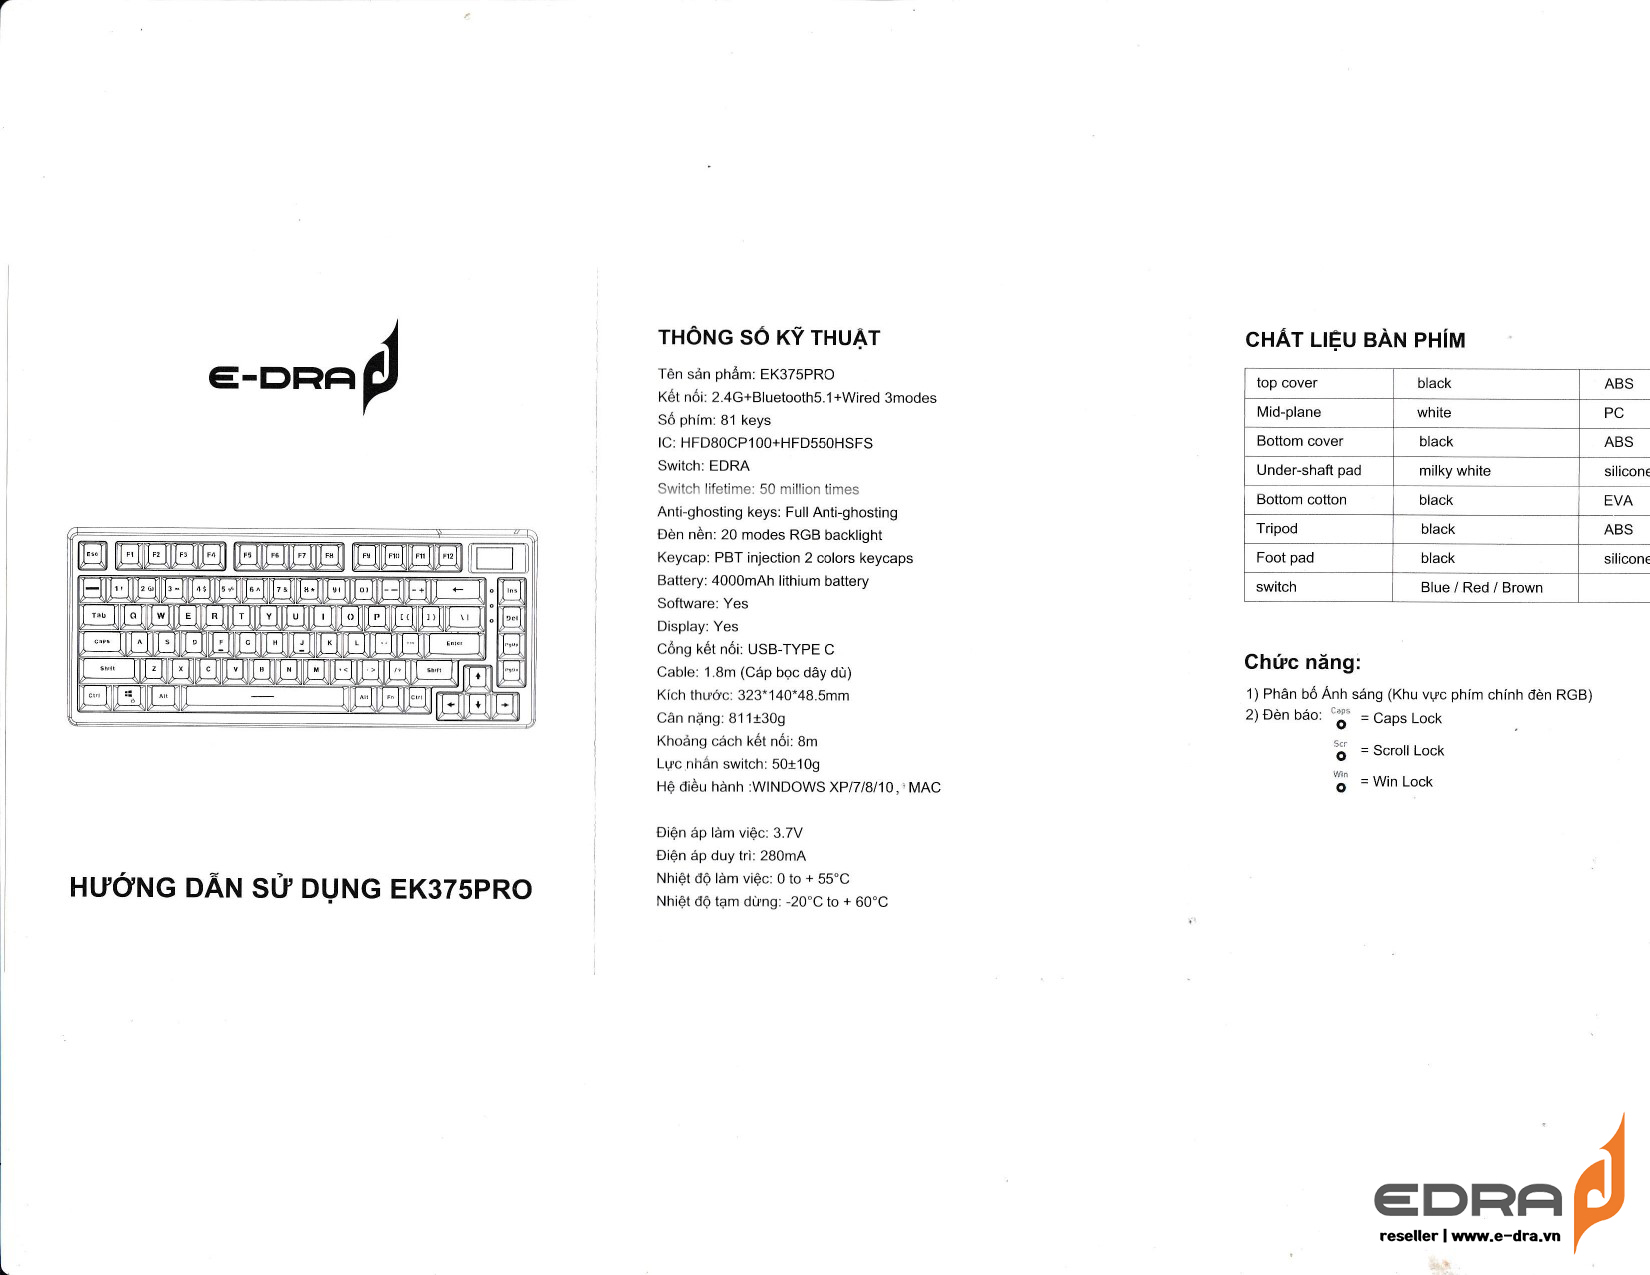 Hướng dẫn sử dụng bàn phím EDra EK375 Pro - hình 1